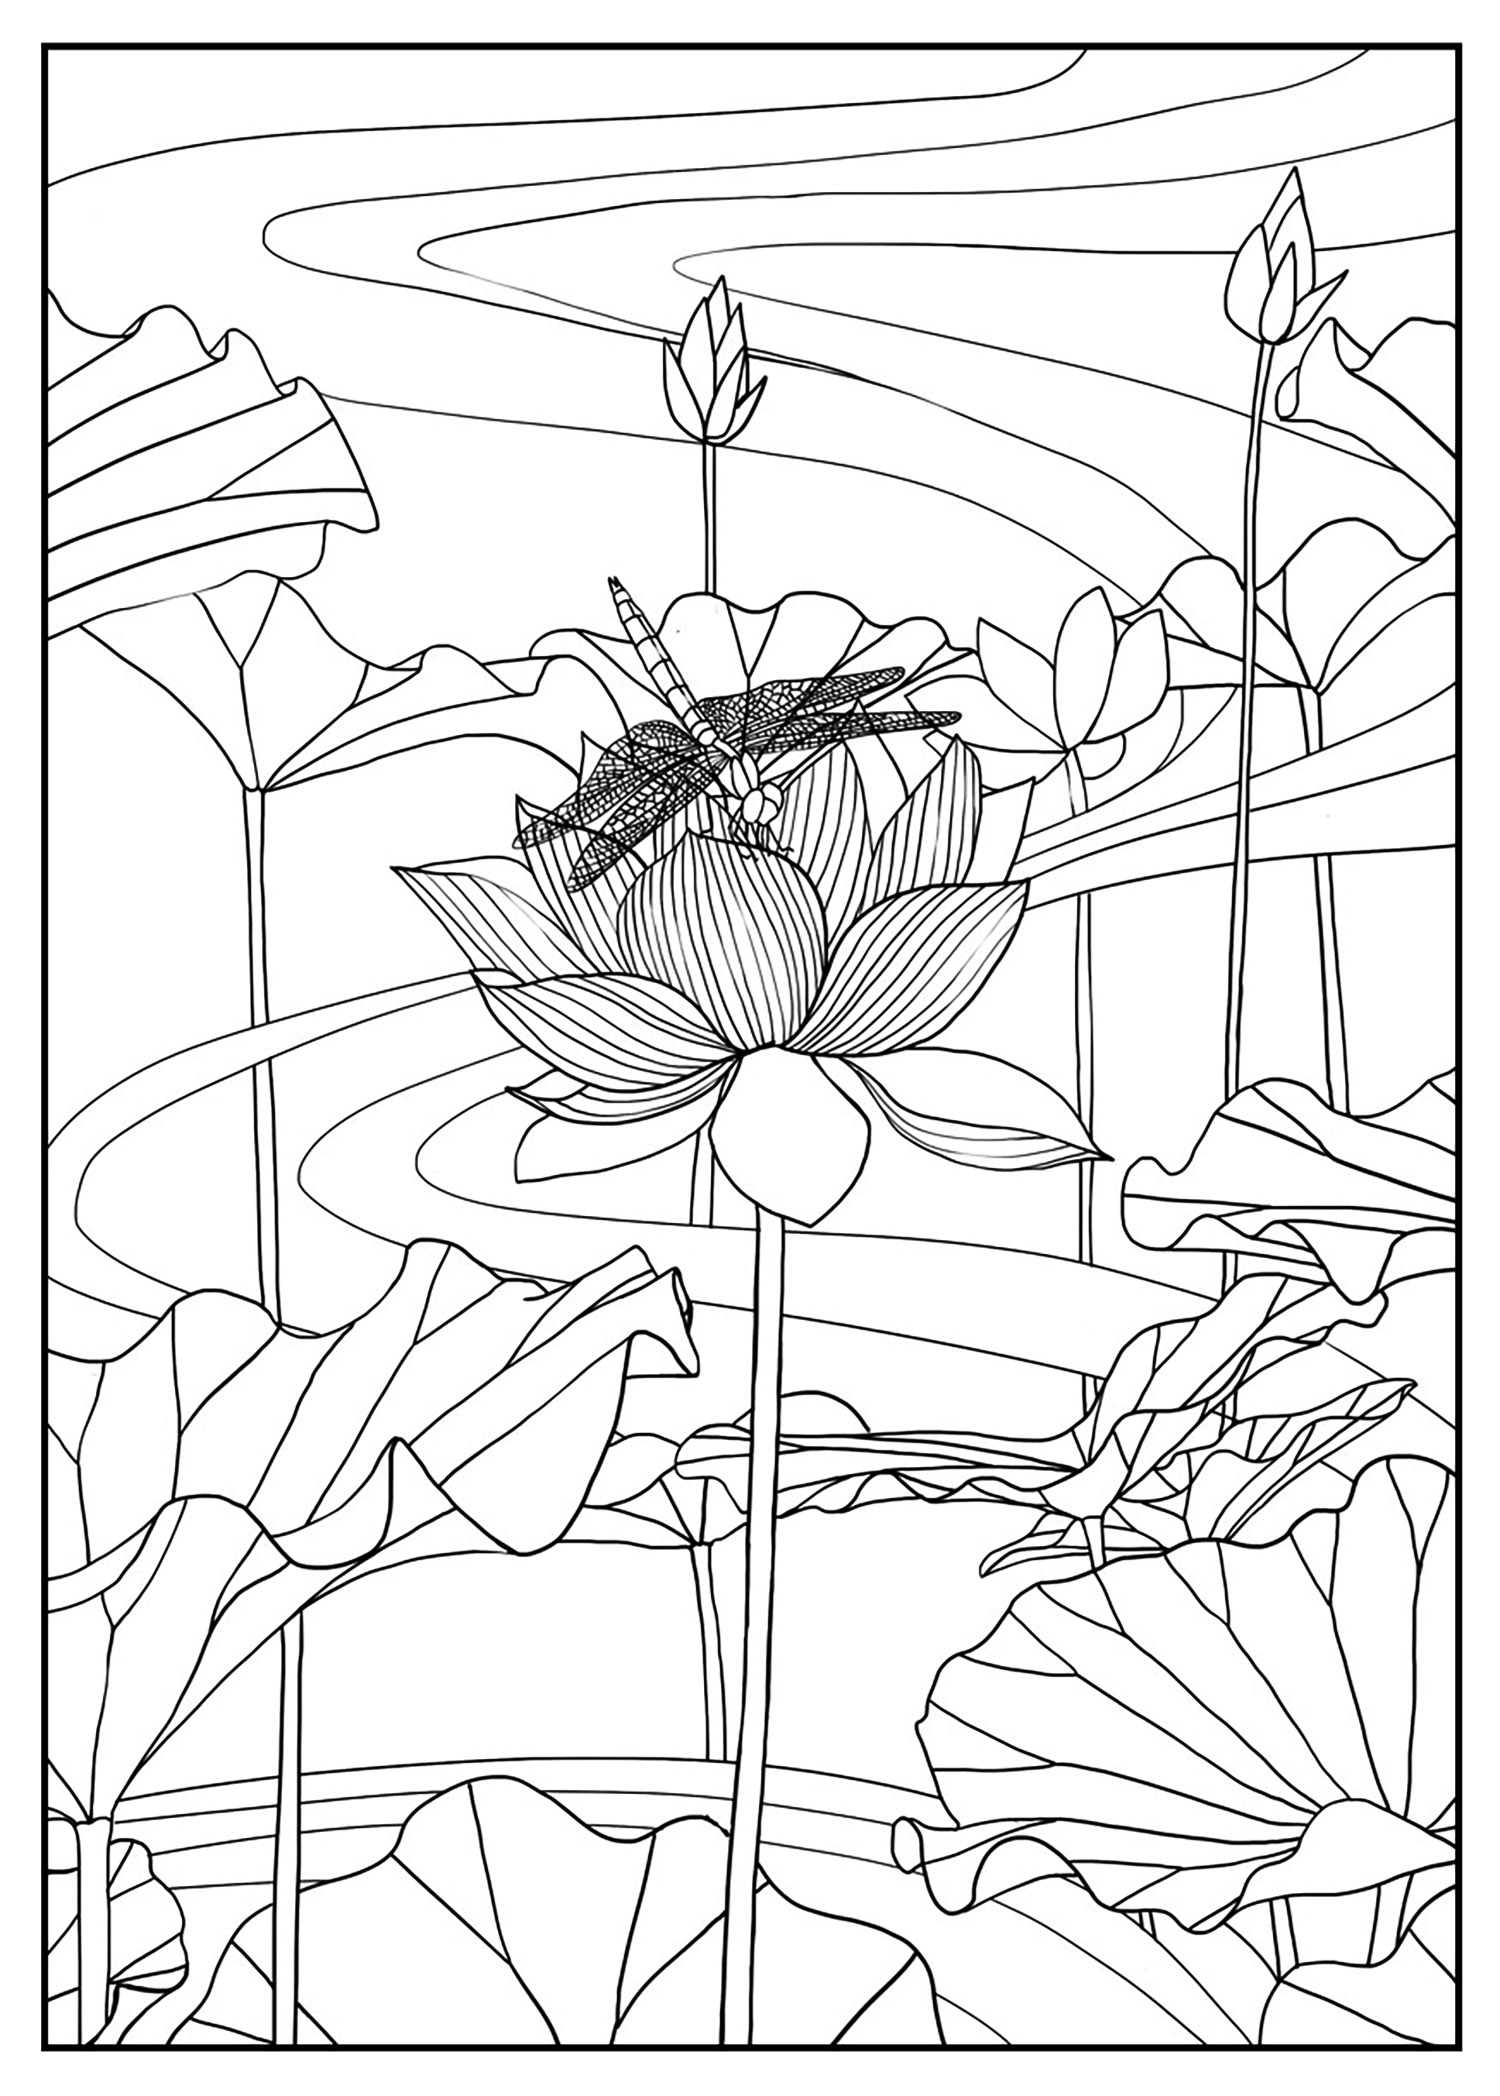 Lotus, Exclusive coloring page, Artist : Mizu